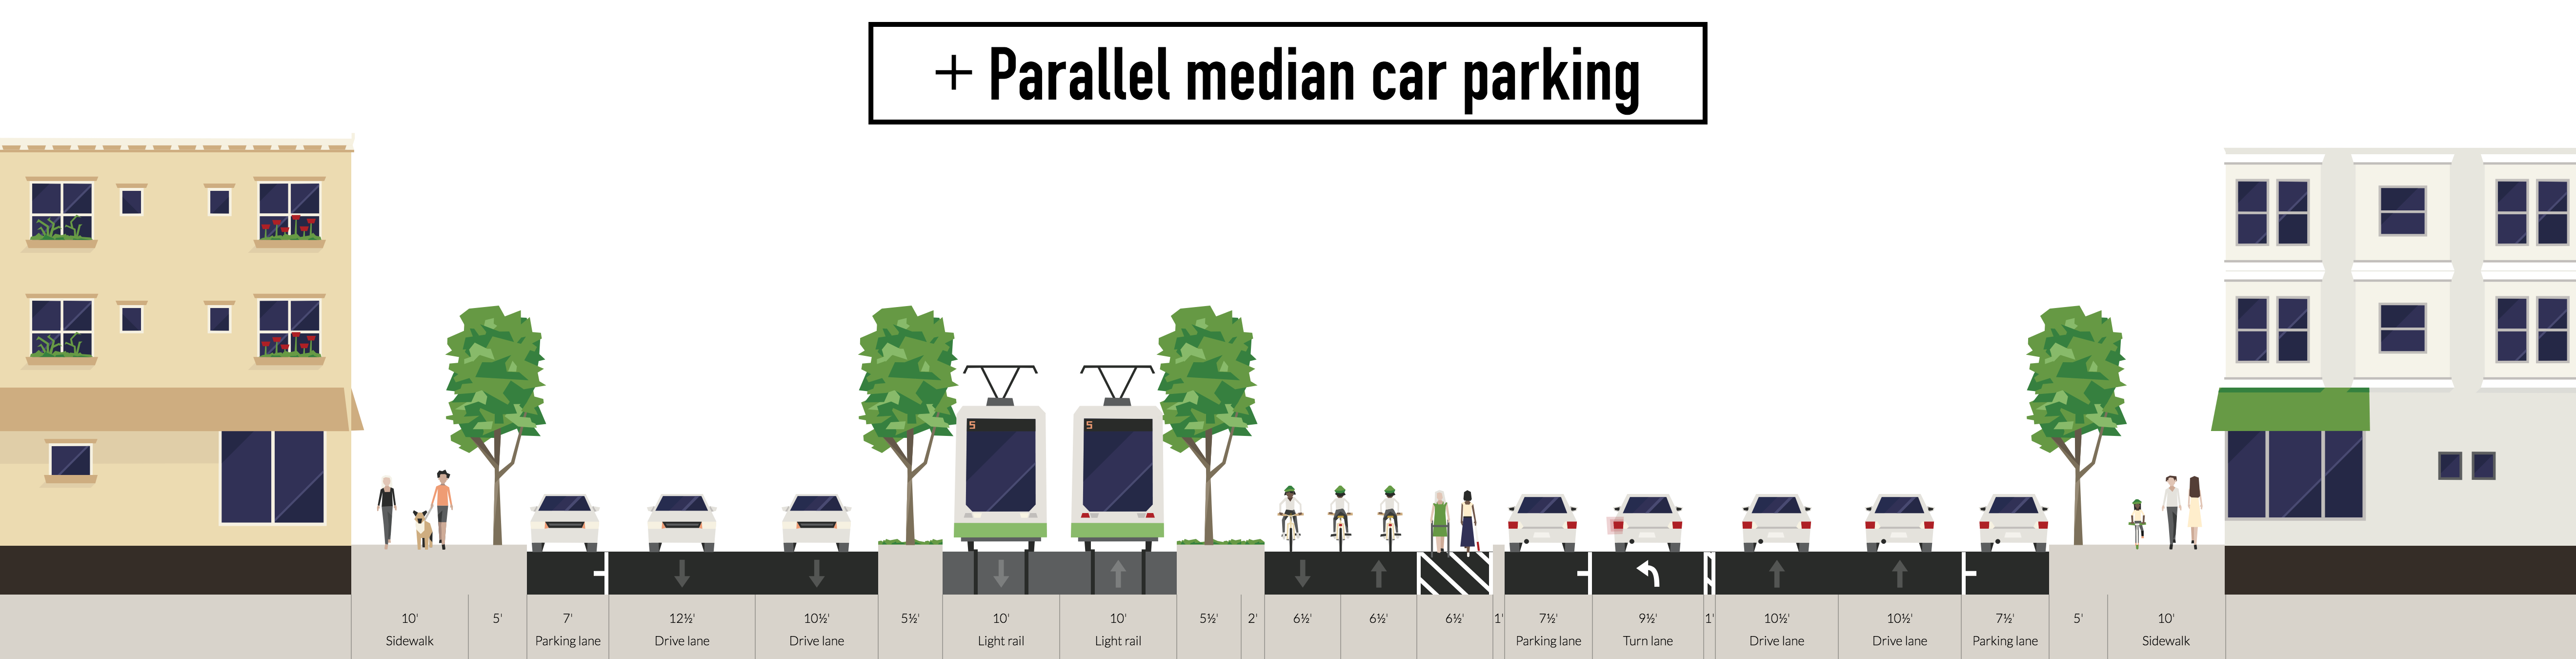 + Parallel median car parking